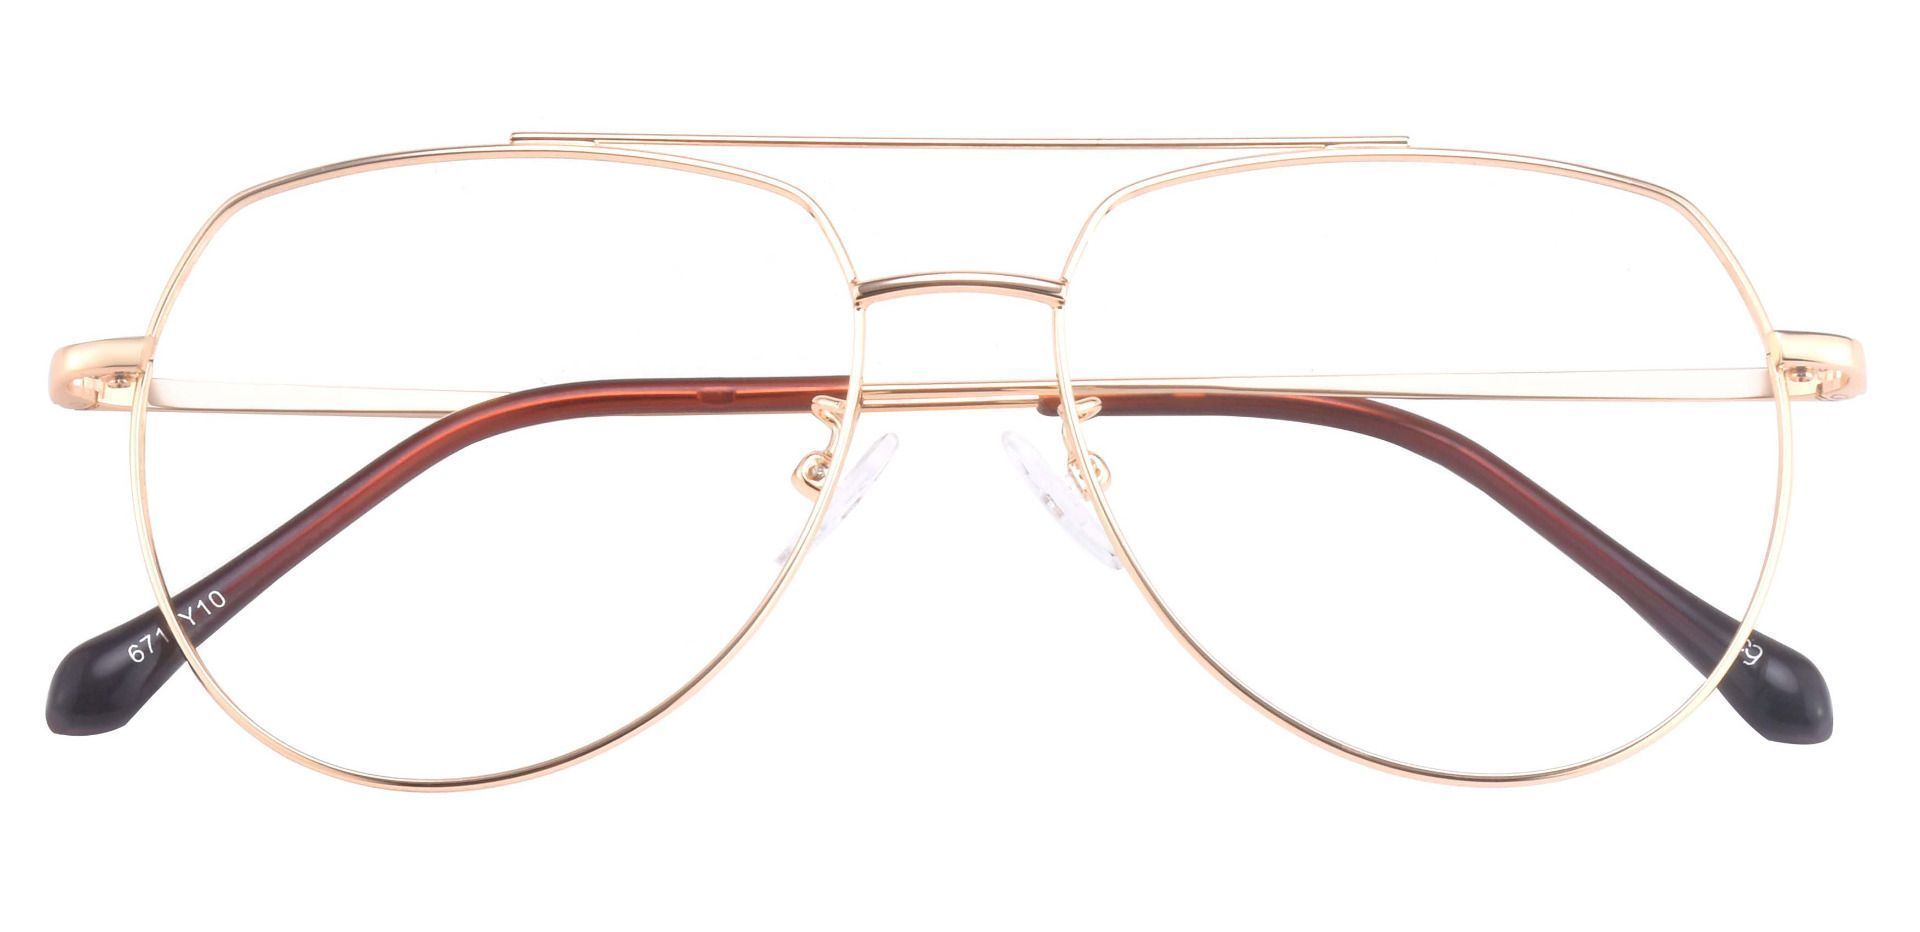 Genesis Aviator Prescription Glasses Gold Women S Eyeglasses Payne Glasses